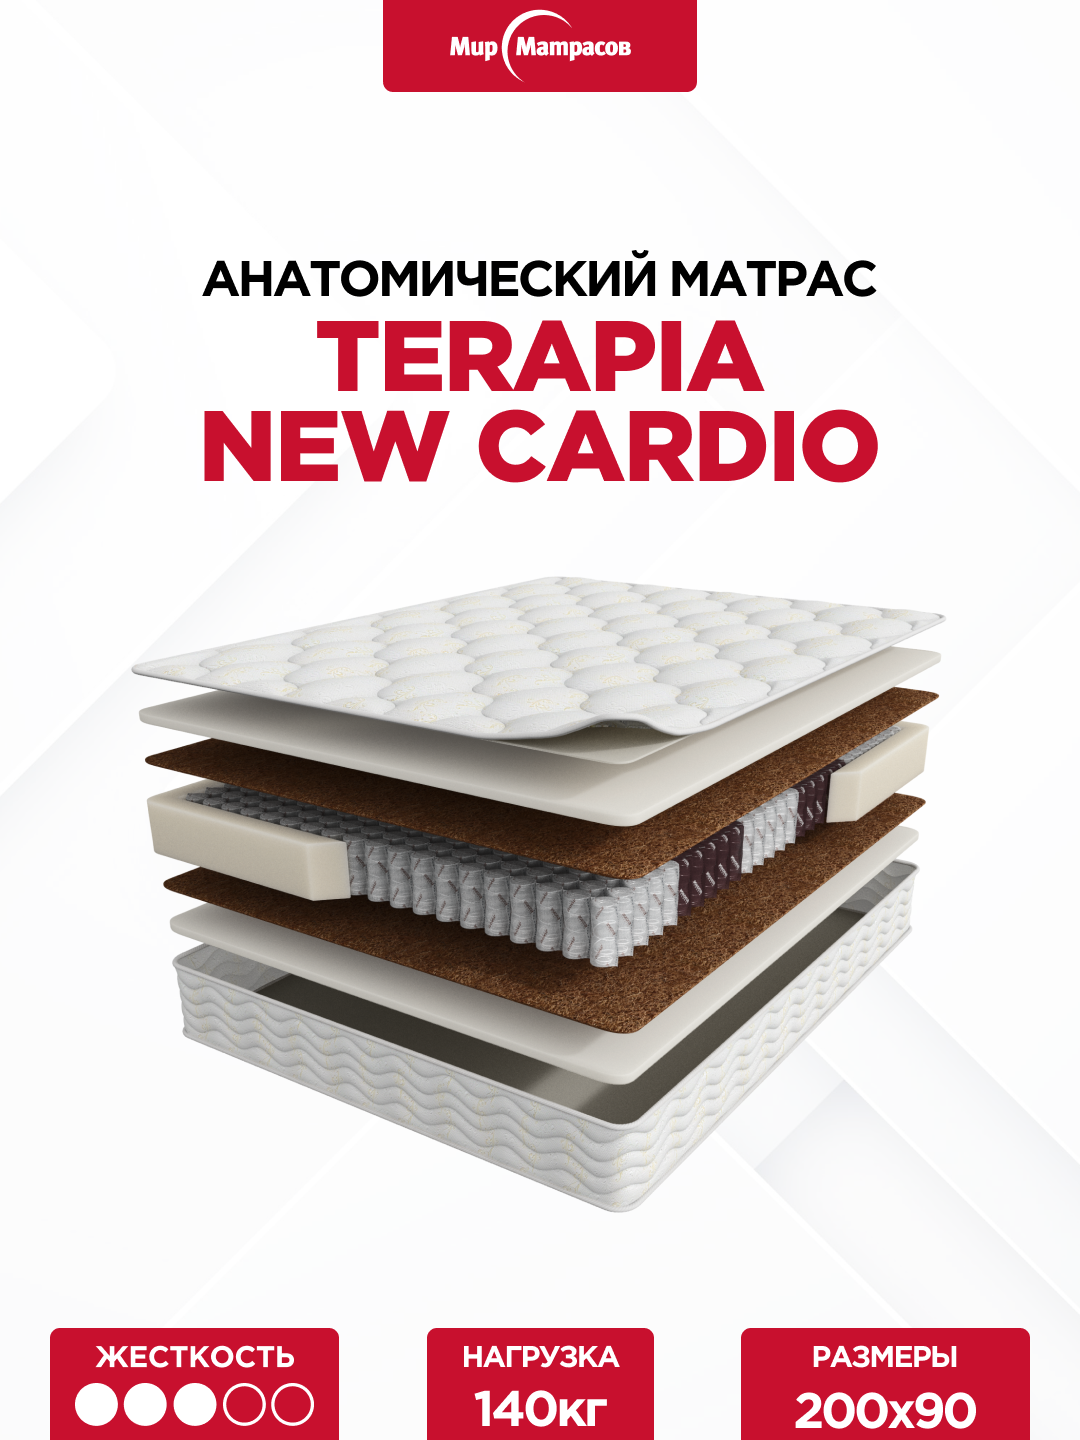 Матрас Terapia New Cardio 200*090 см. Ортопедический двусторонний матрас с независимыми пружинами.